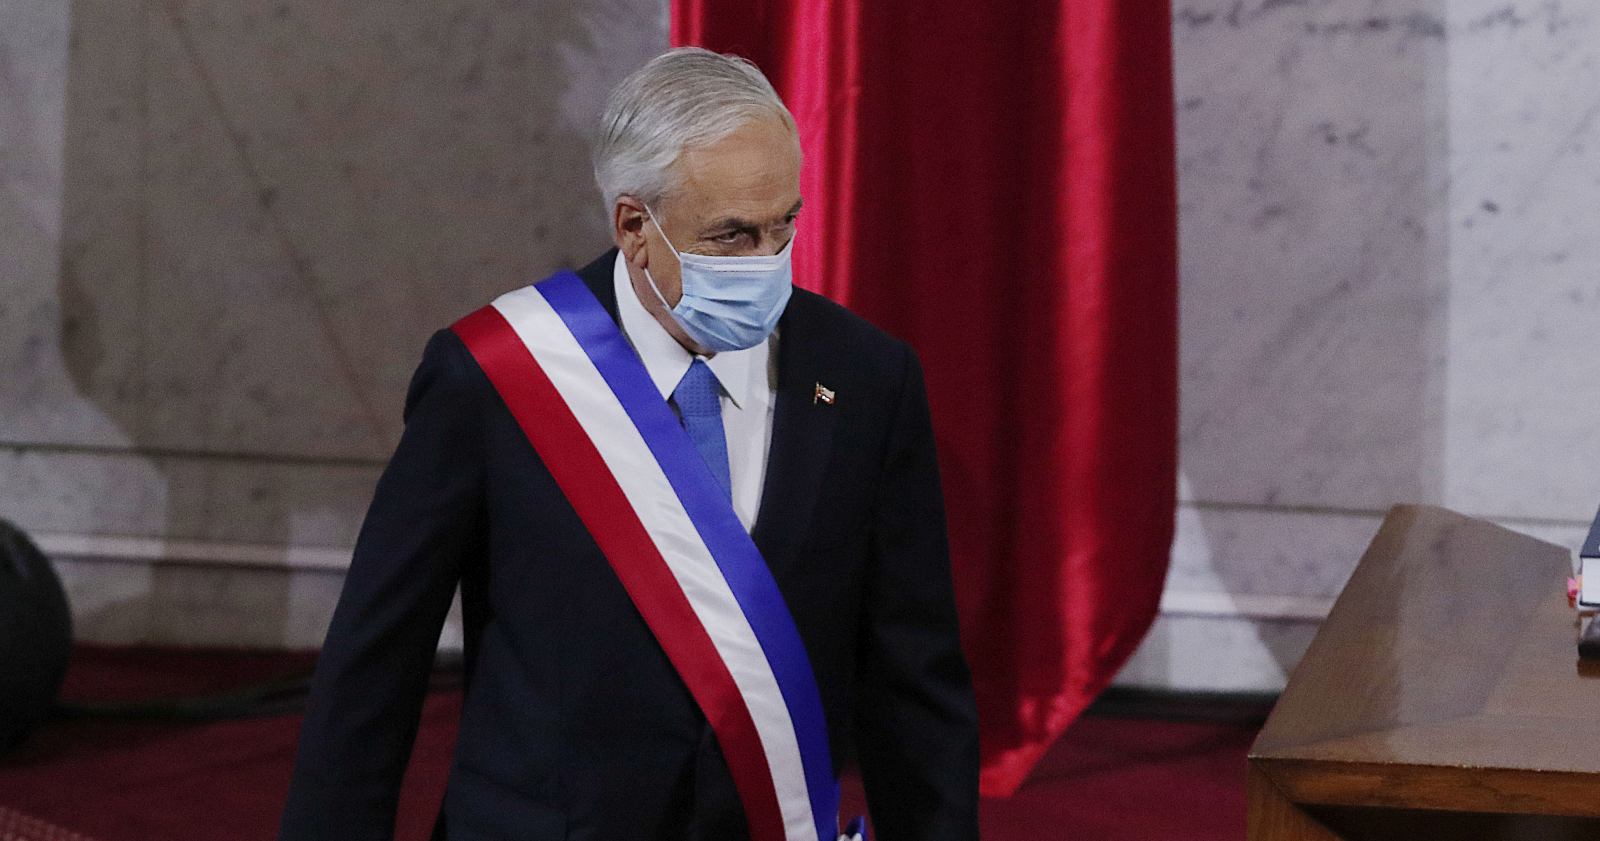 Piñera indulto